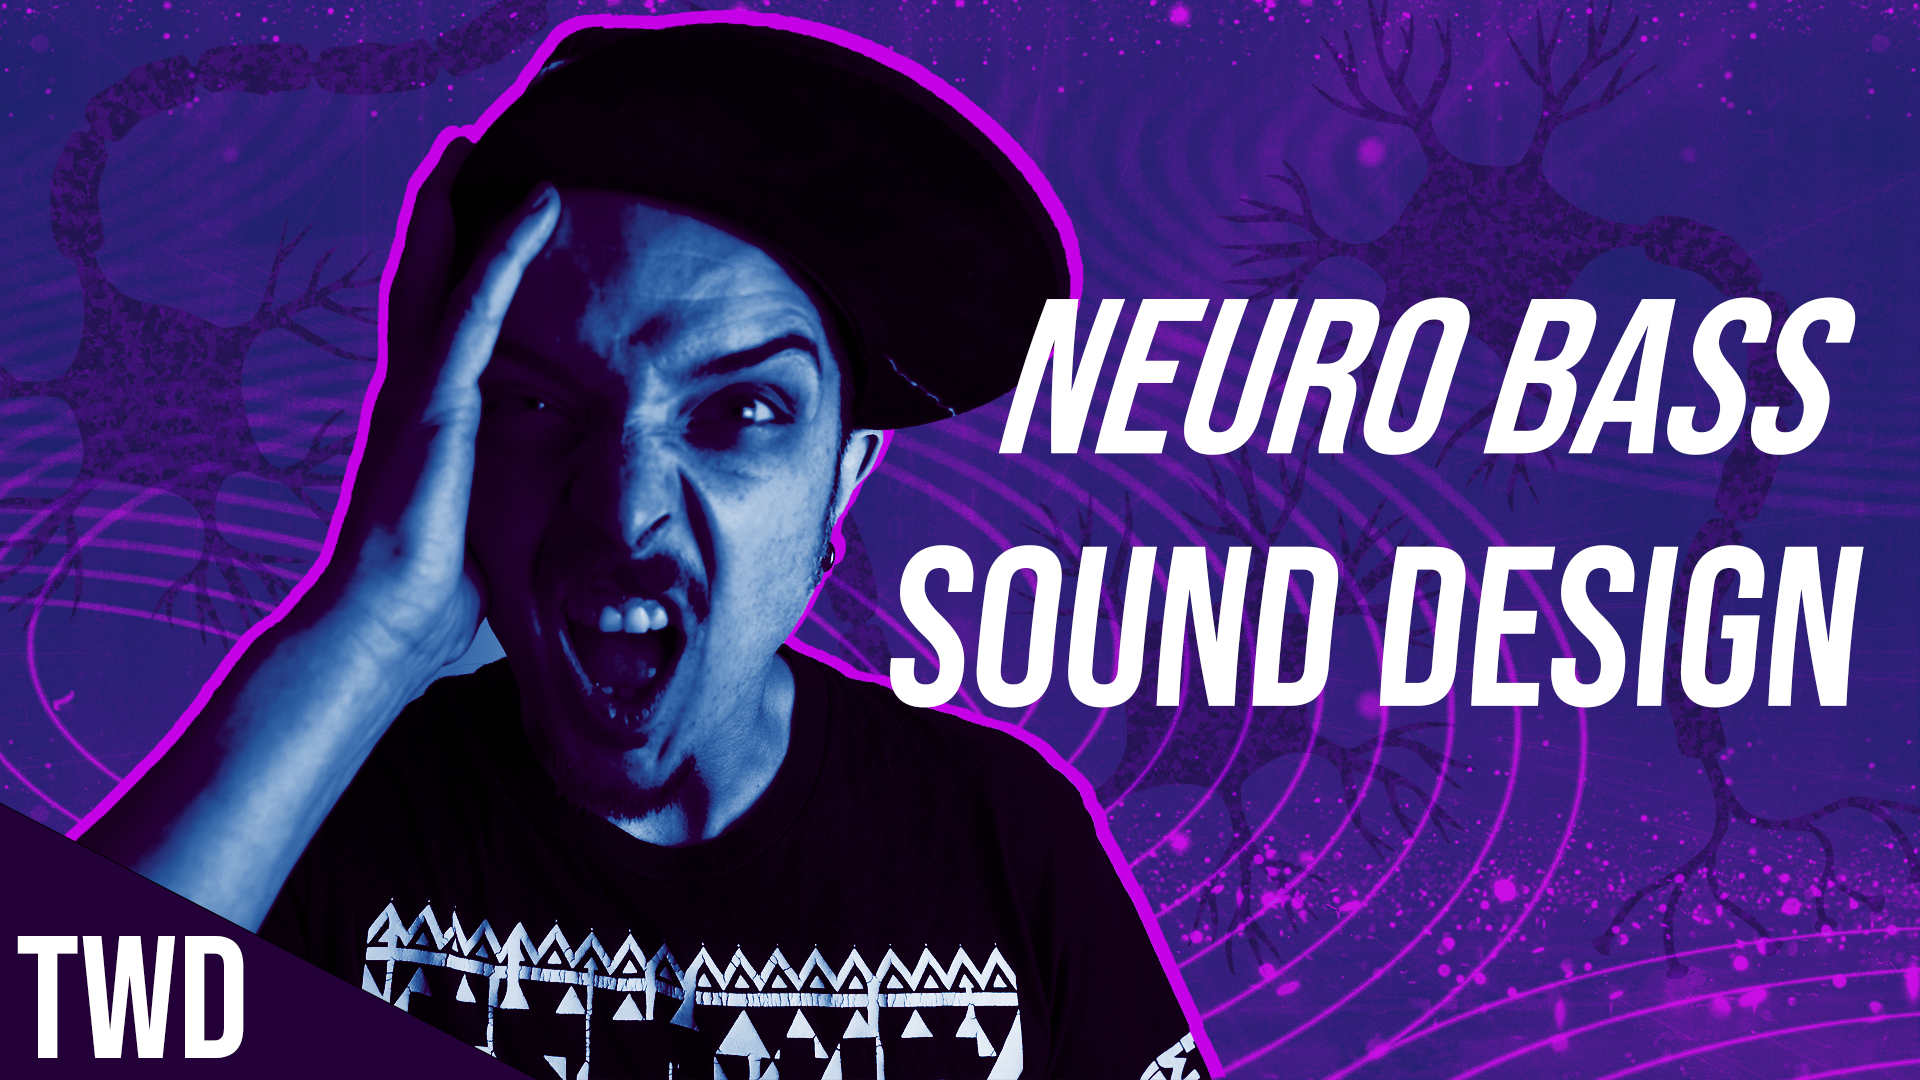 Neuro bass sound design edm tutorial